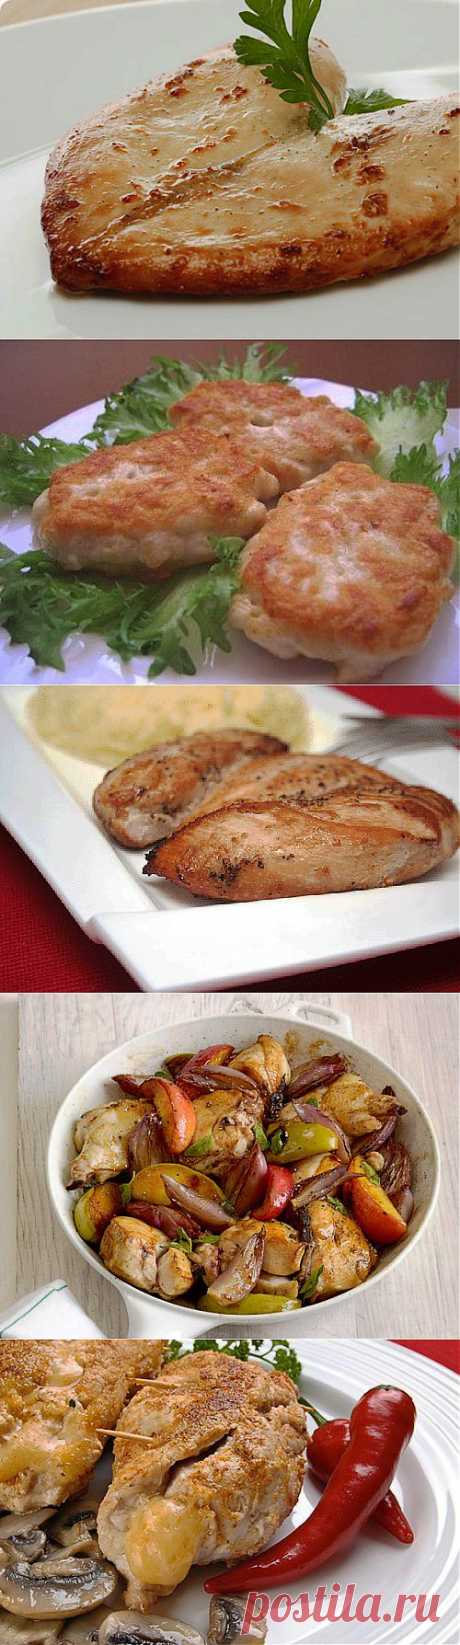 Блюда из куриной грудки / Простые рецепты